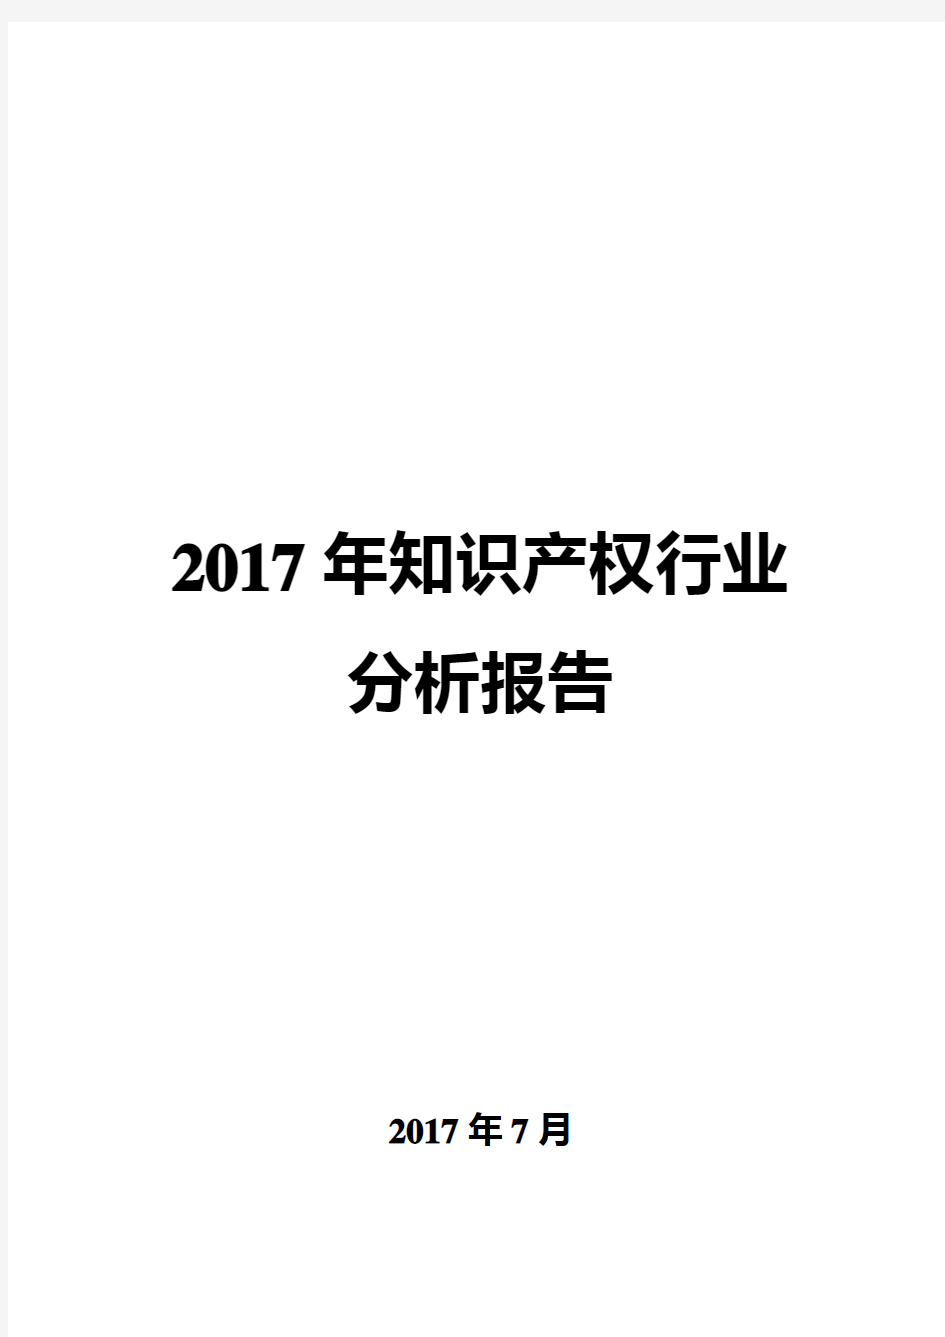 2017年知识产权行业分析报告